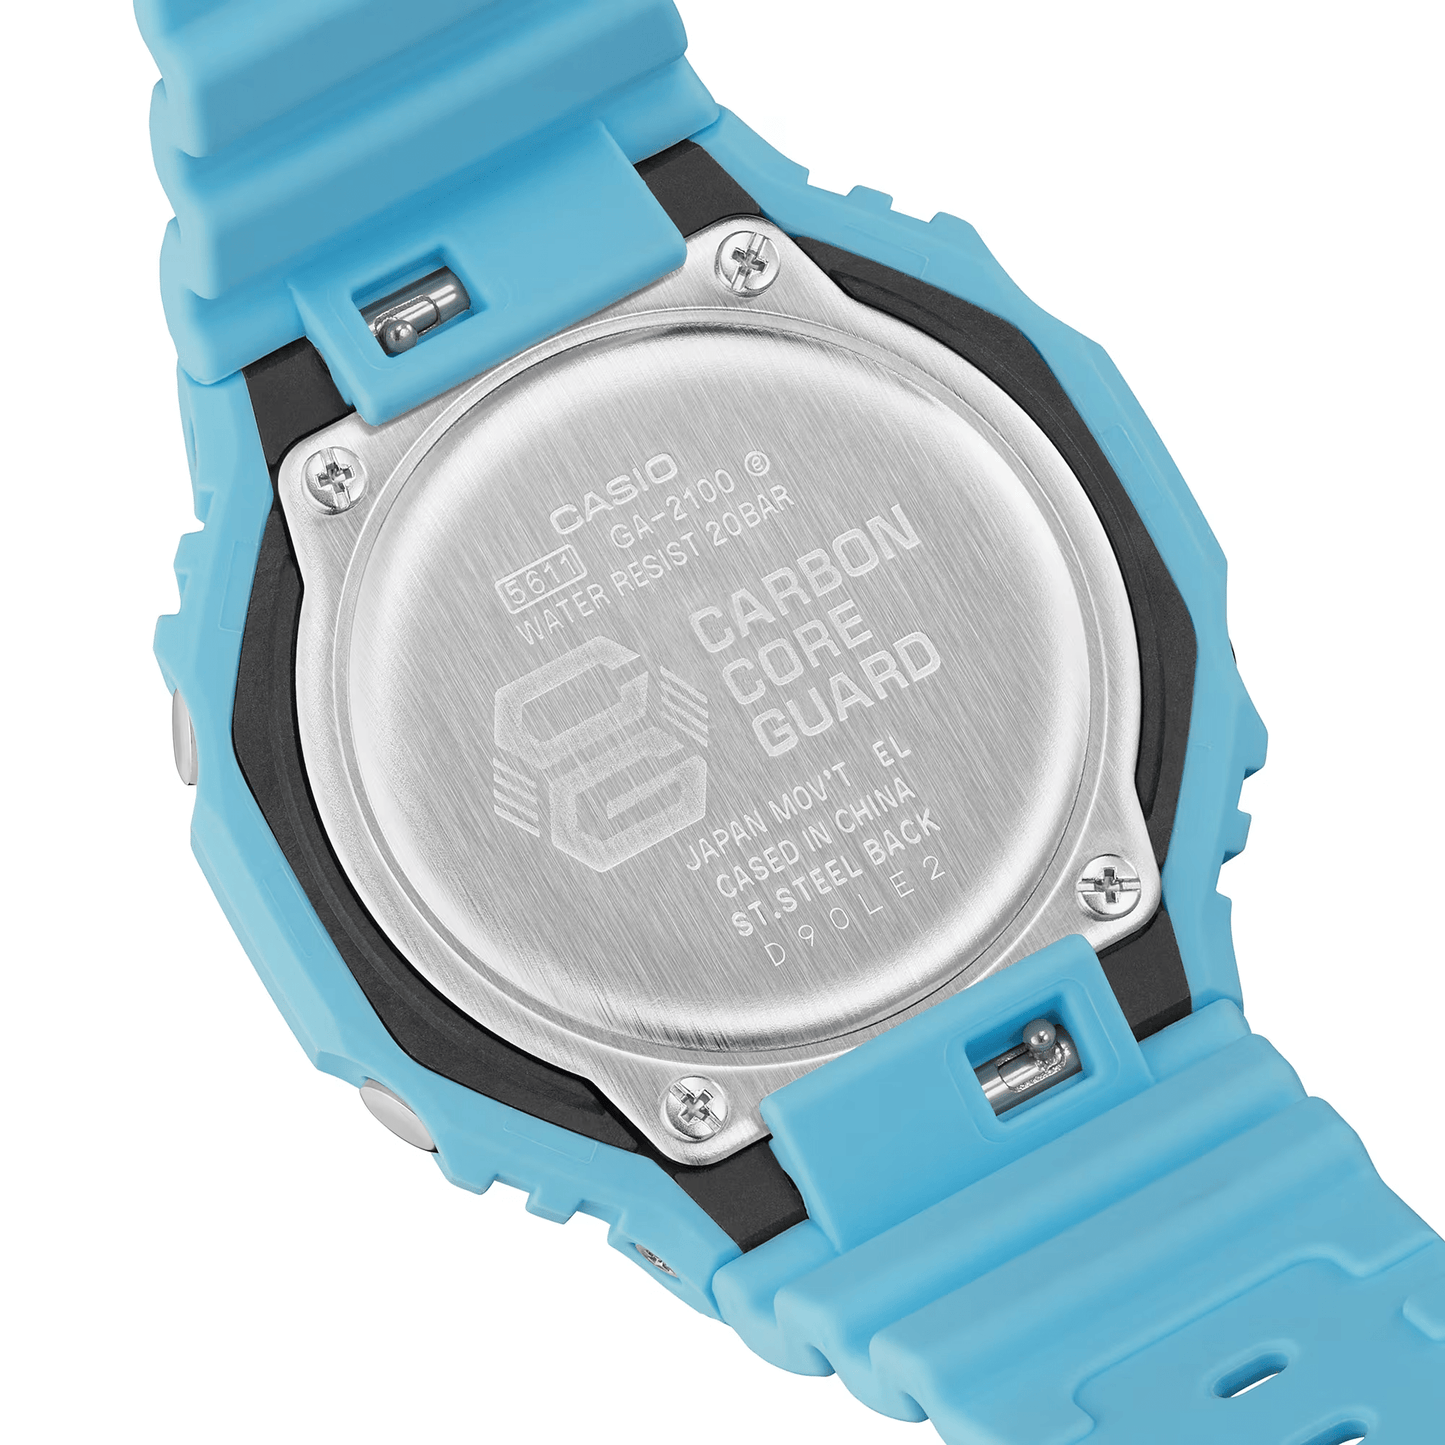 G-Shock Analog-Digital Turquoise Men's Watch GA2100-2A2